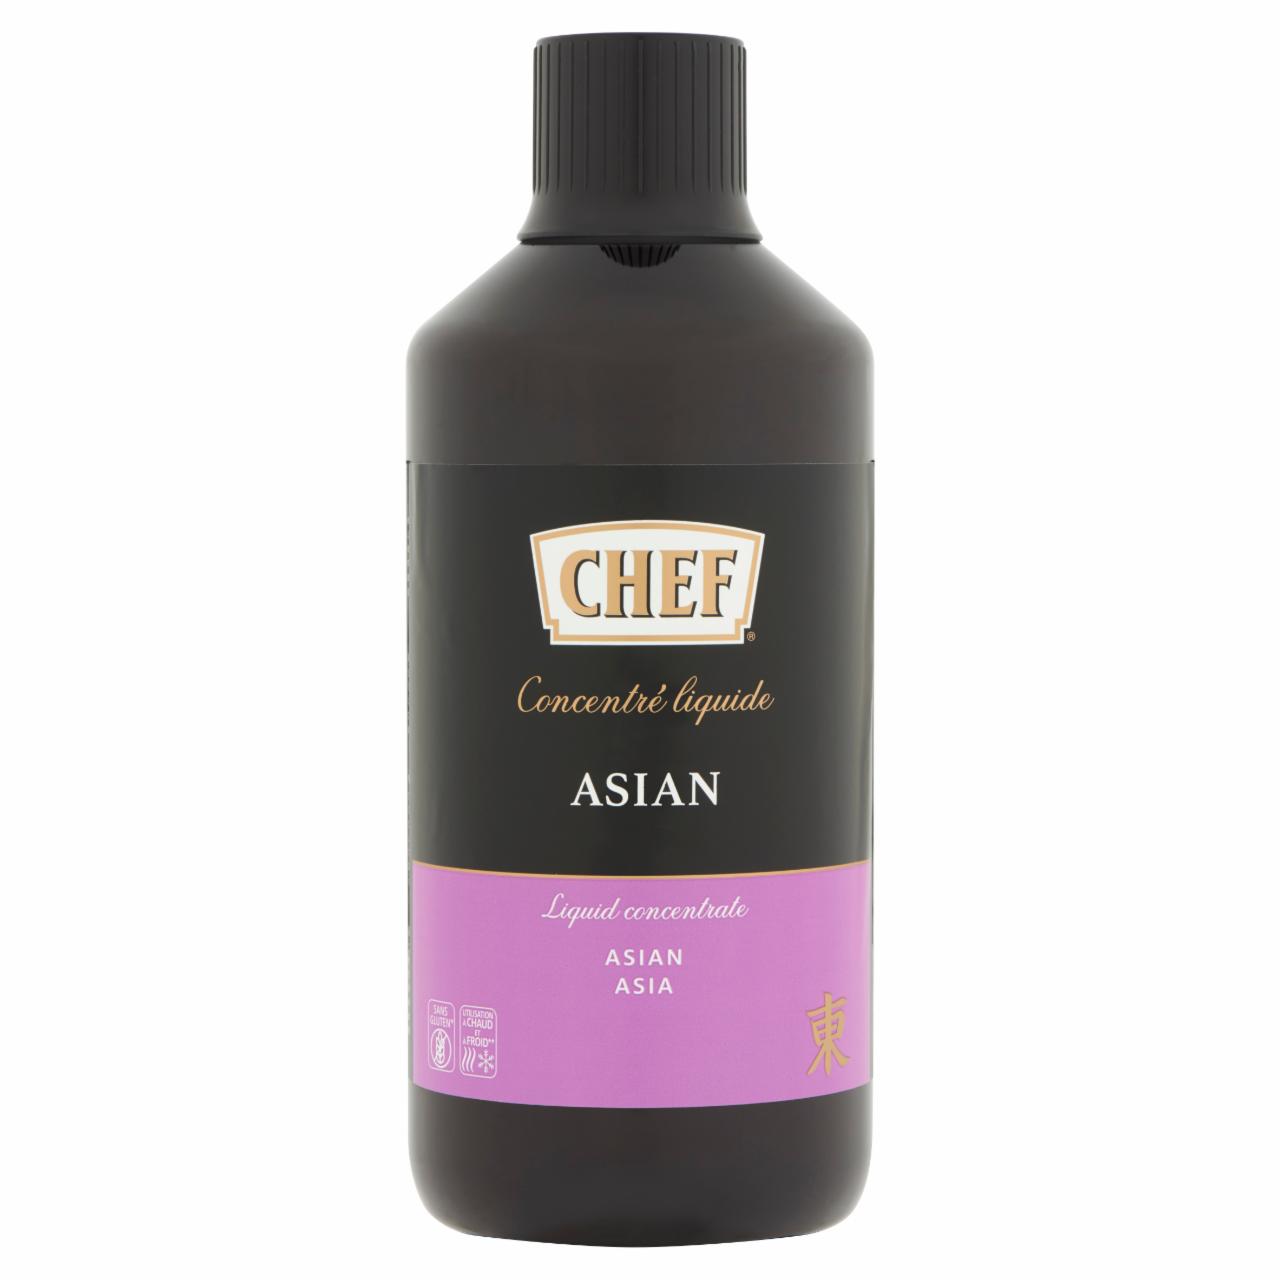 Képek - Chef ázsiai ízesítésű alaplé-koncentrátum 980 ml